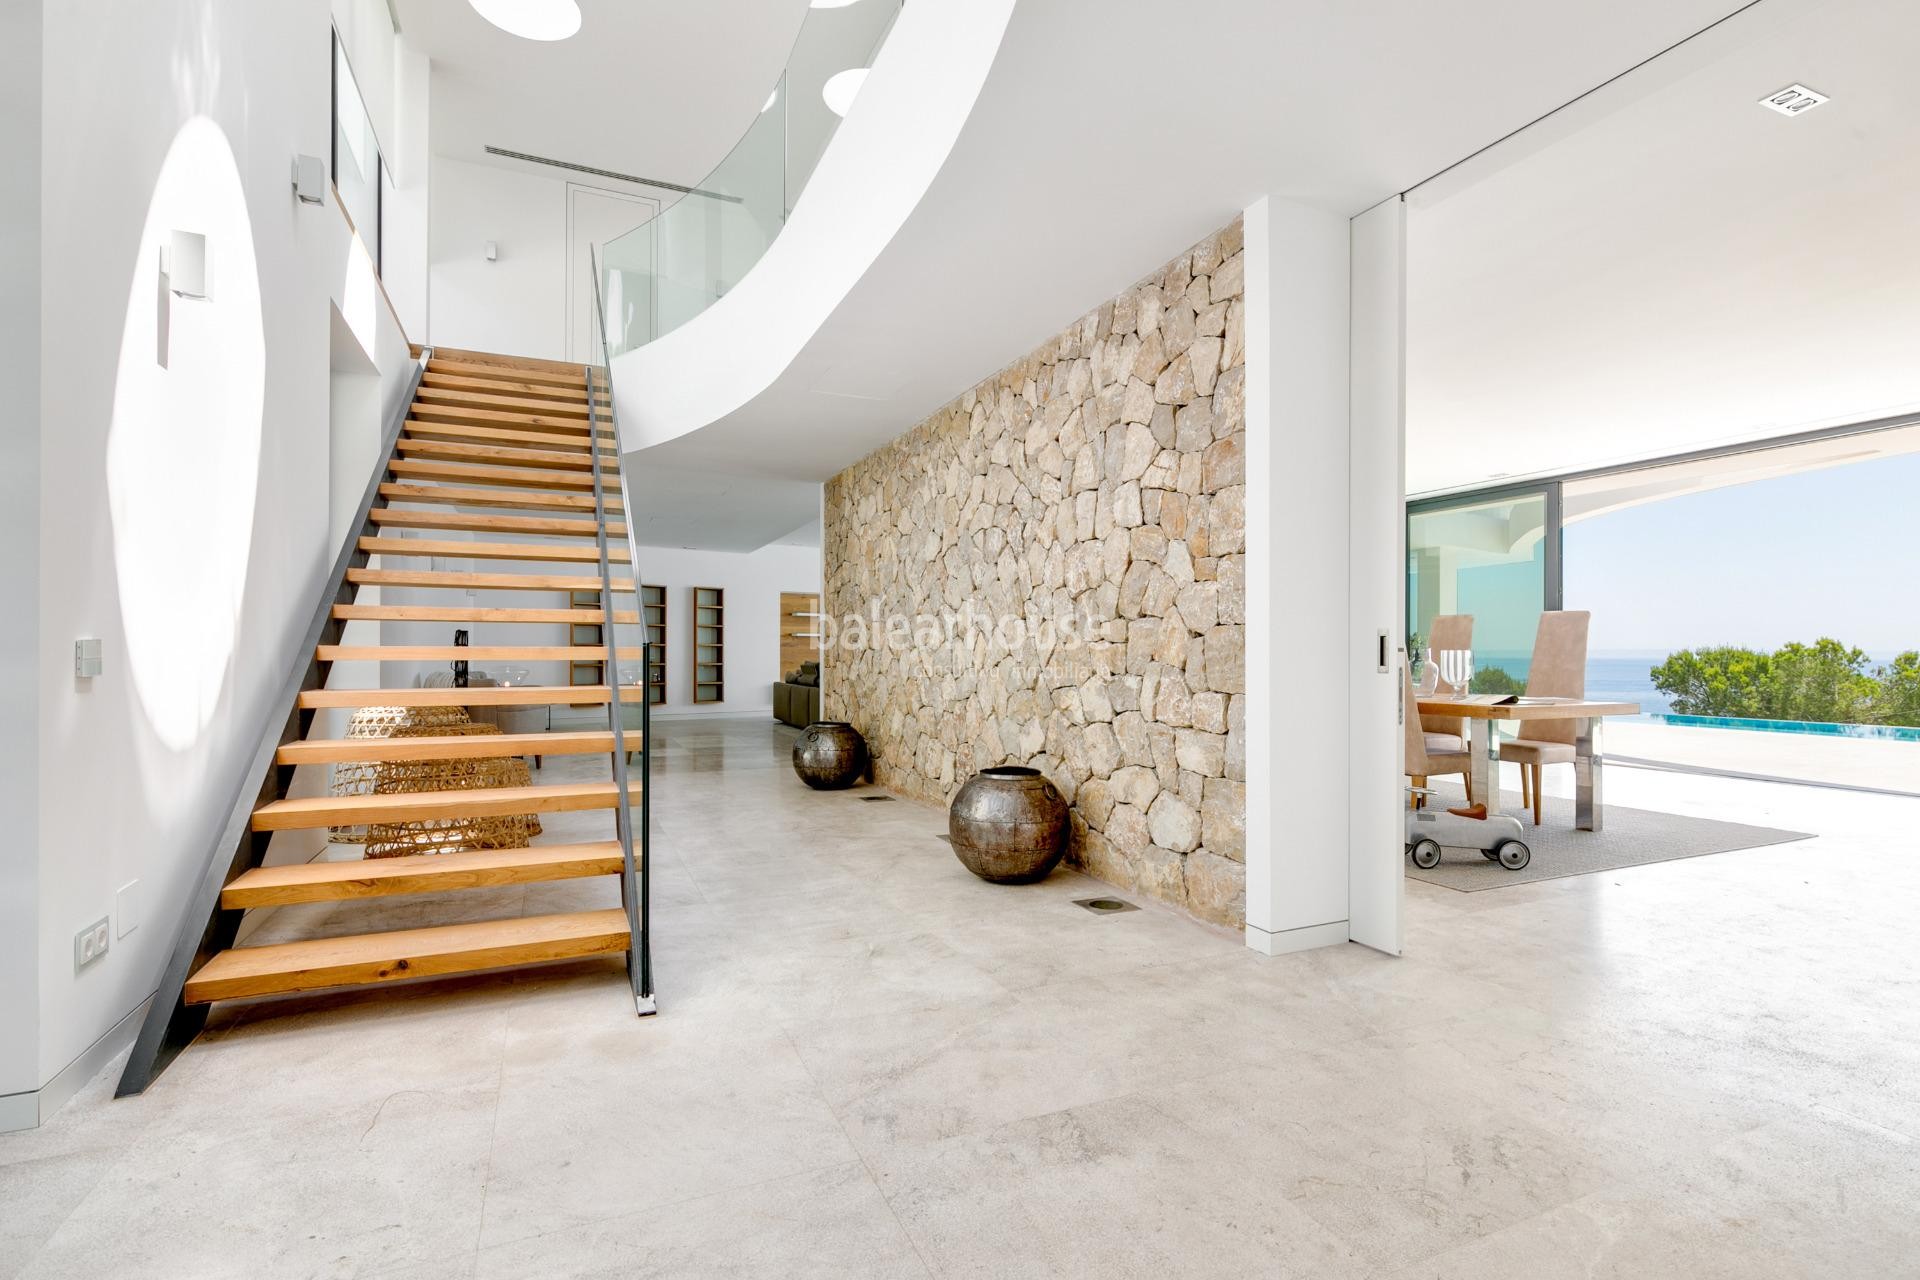 Espectacular villa de diseño moderno en primera línea y con acceso directo al mar en Cala Vinyas